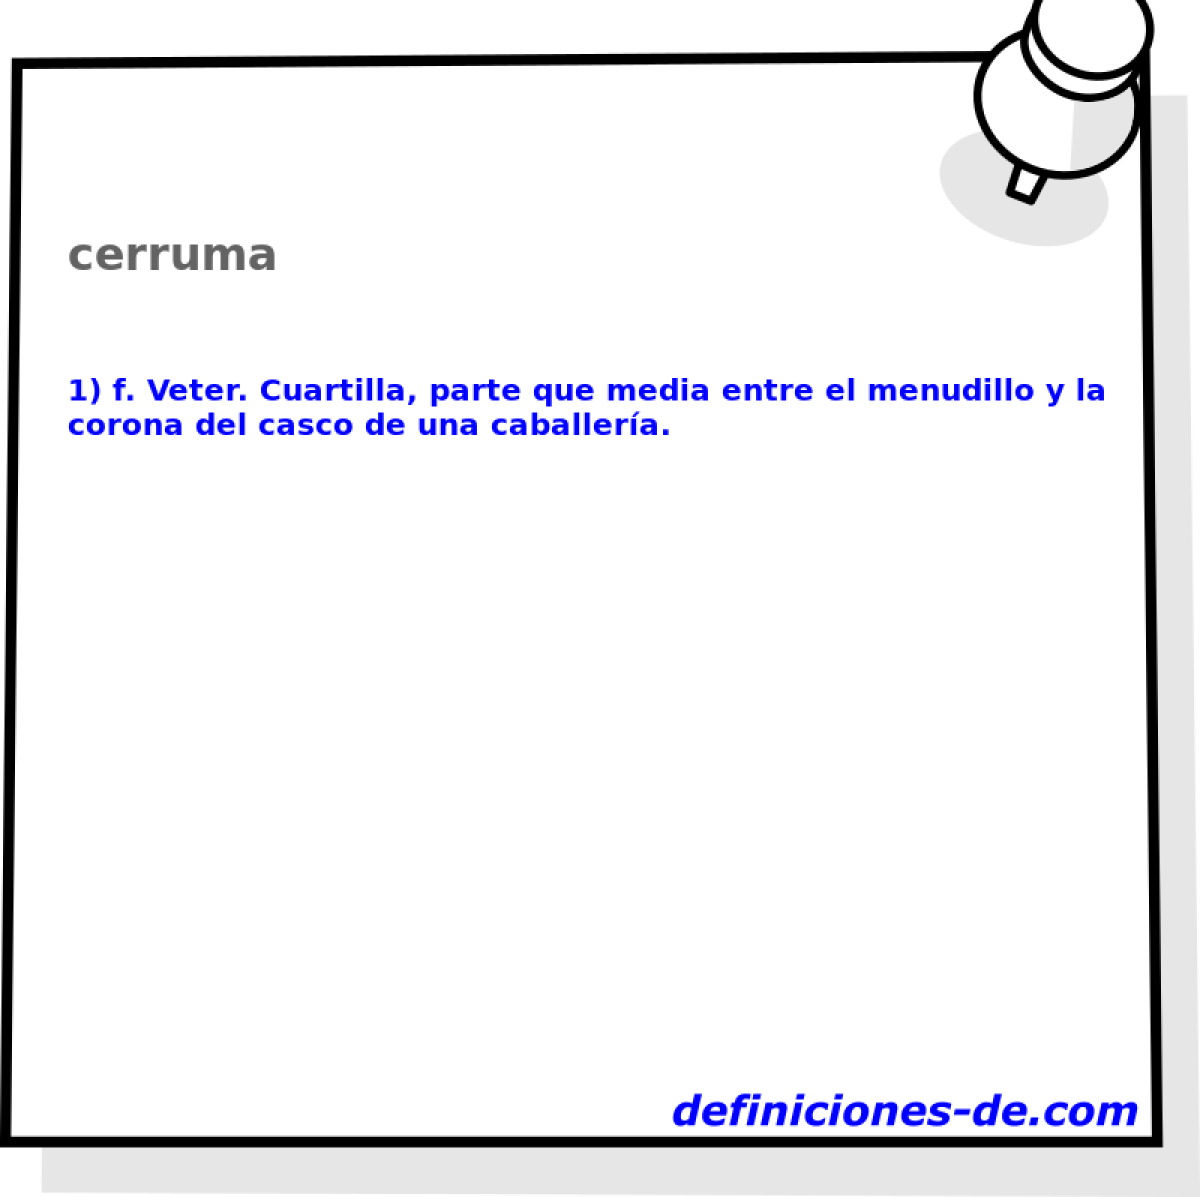 cerruma 